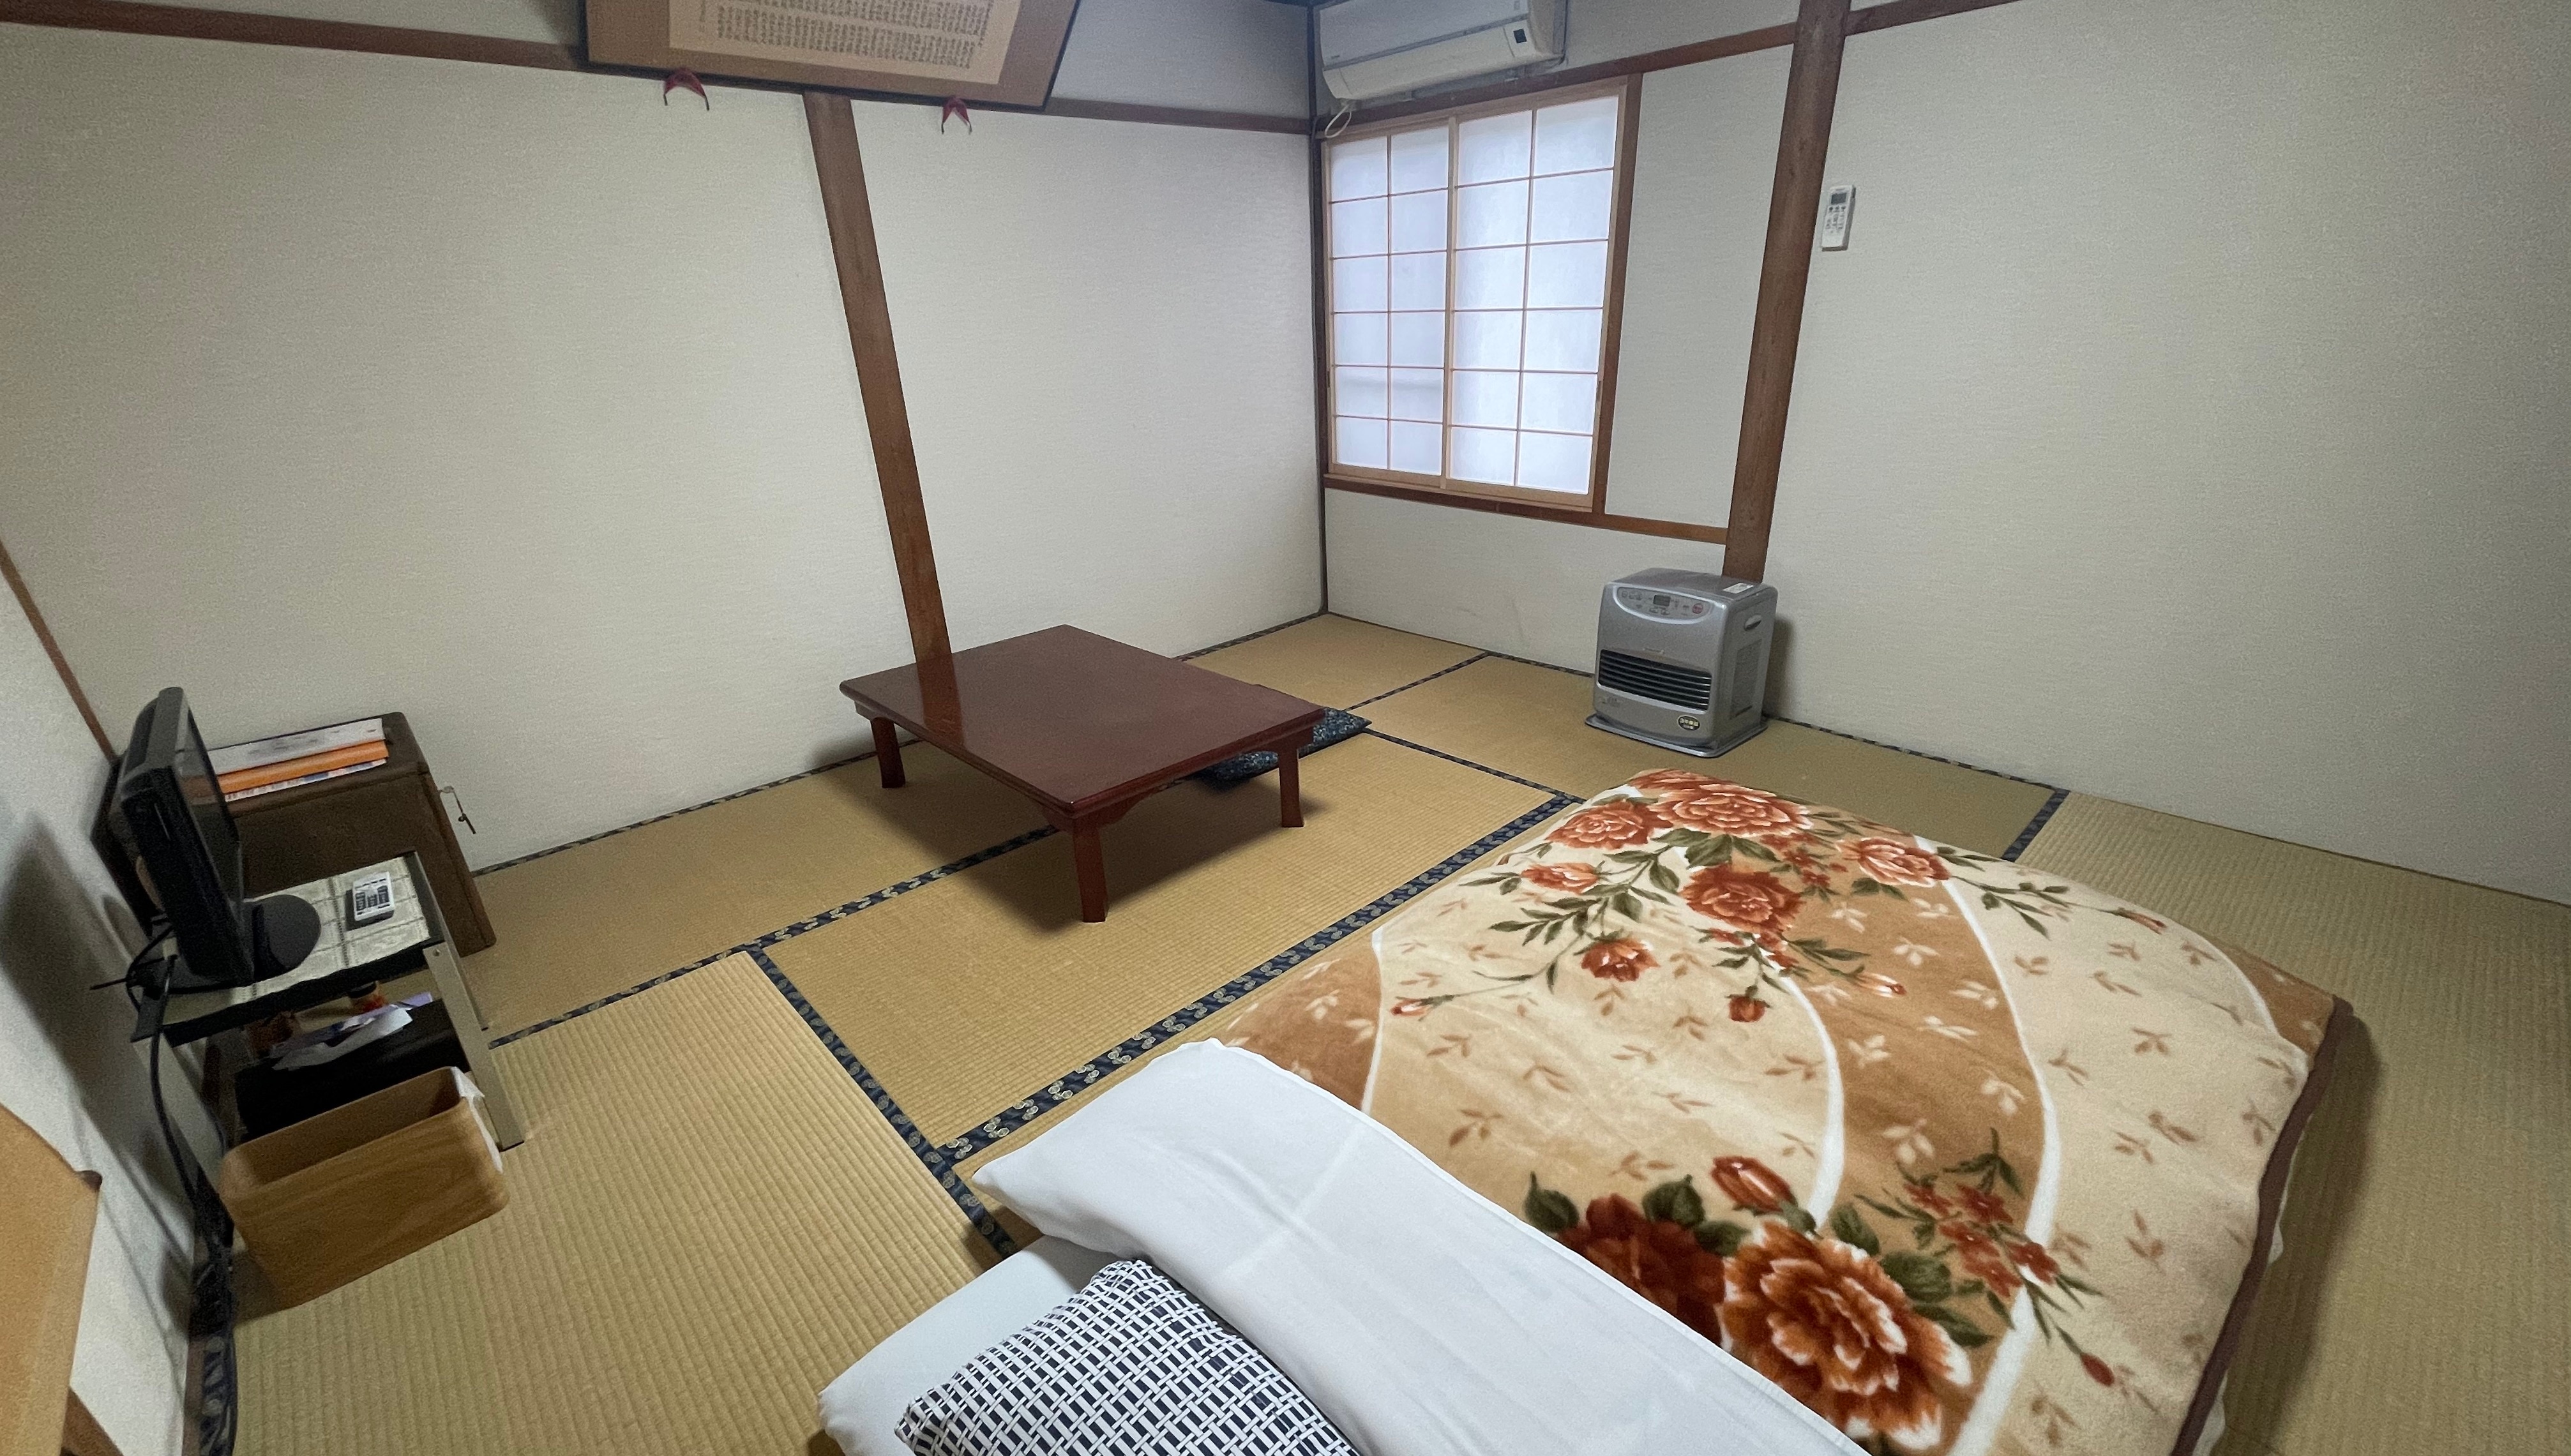 【日式房间】有550年历史的日式房间-8-10张榻榻米